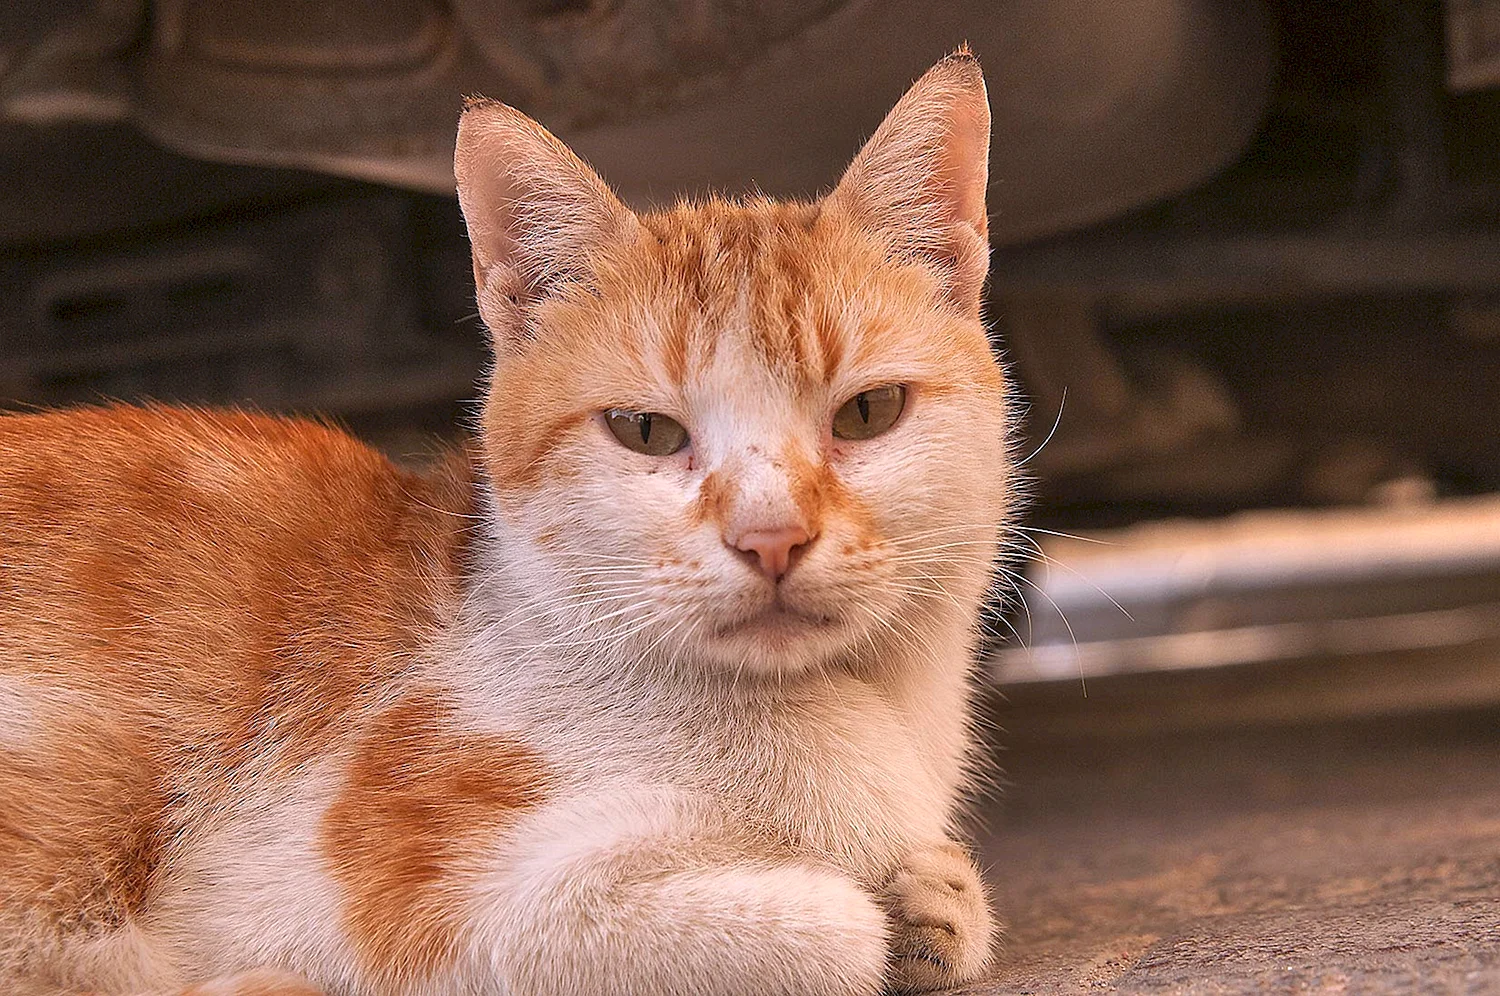 Турецкая Анатолийская кошка рыжая